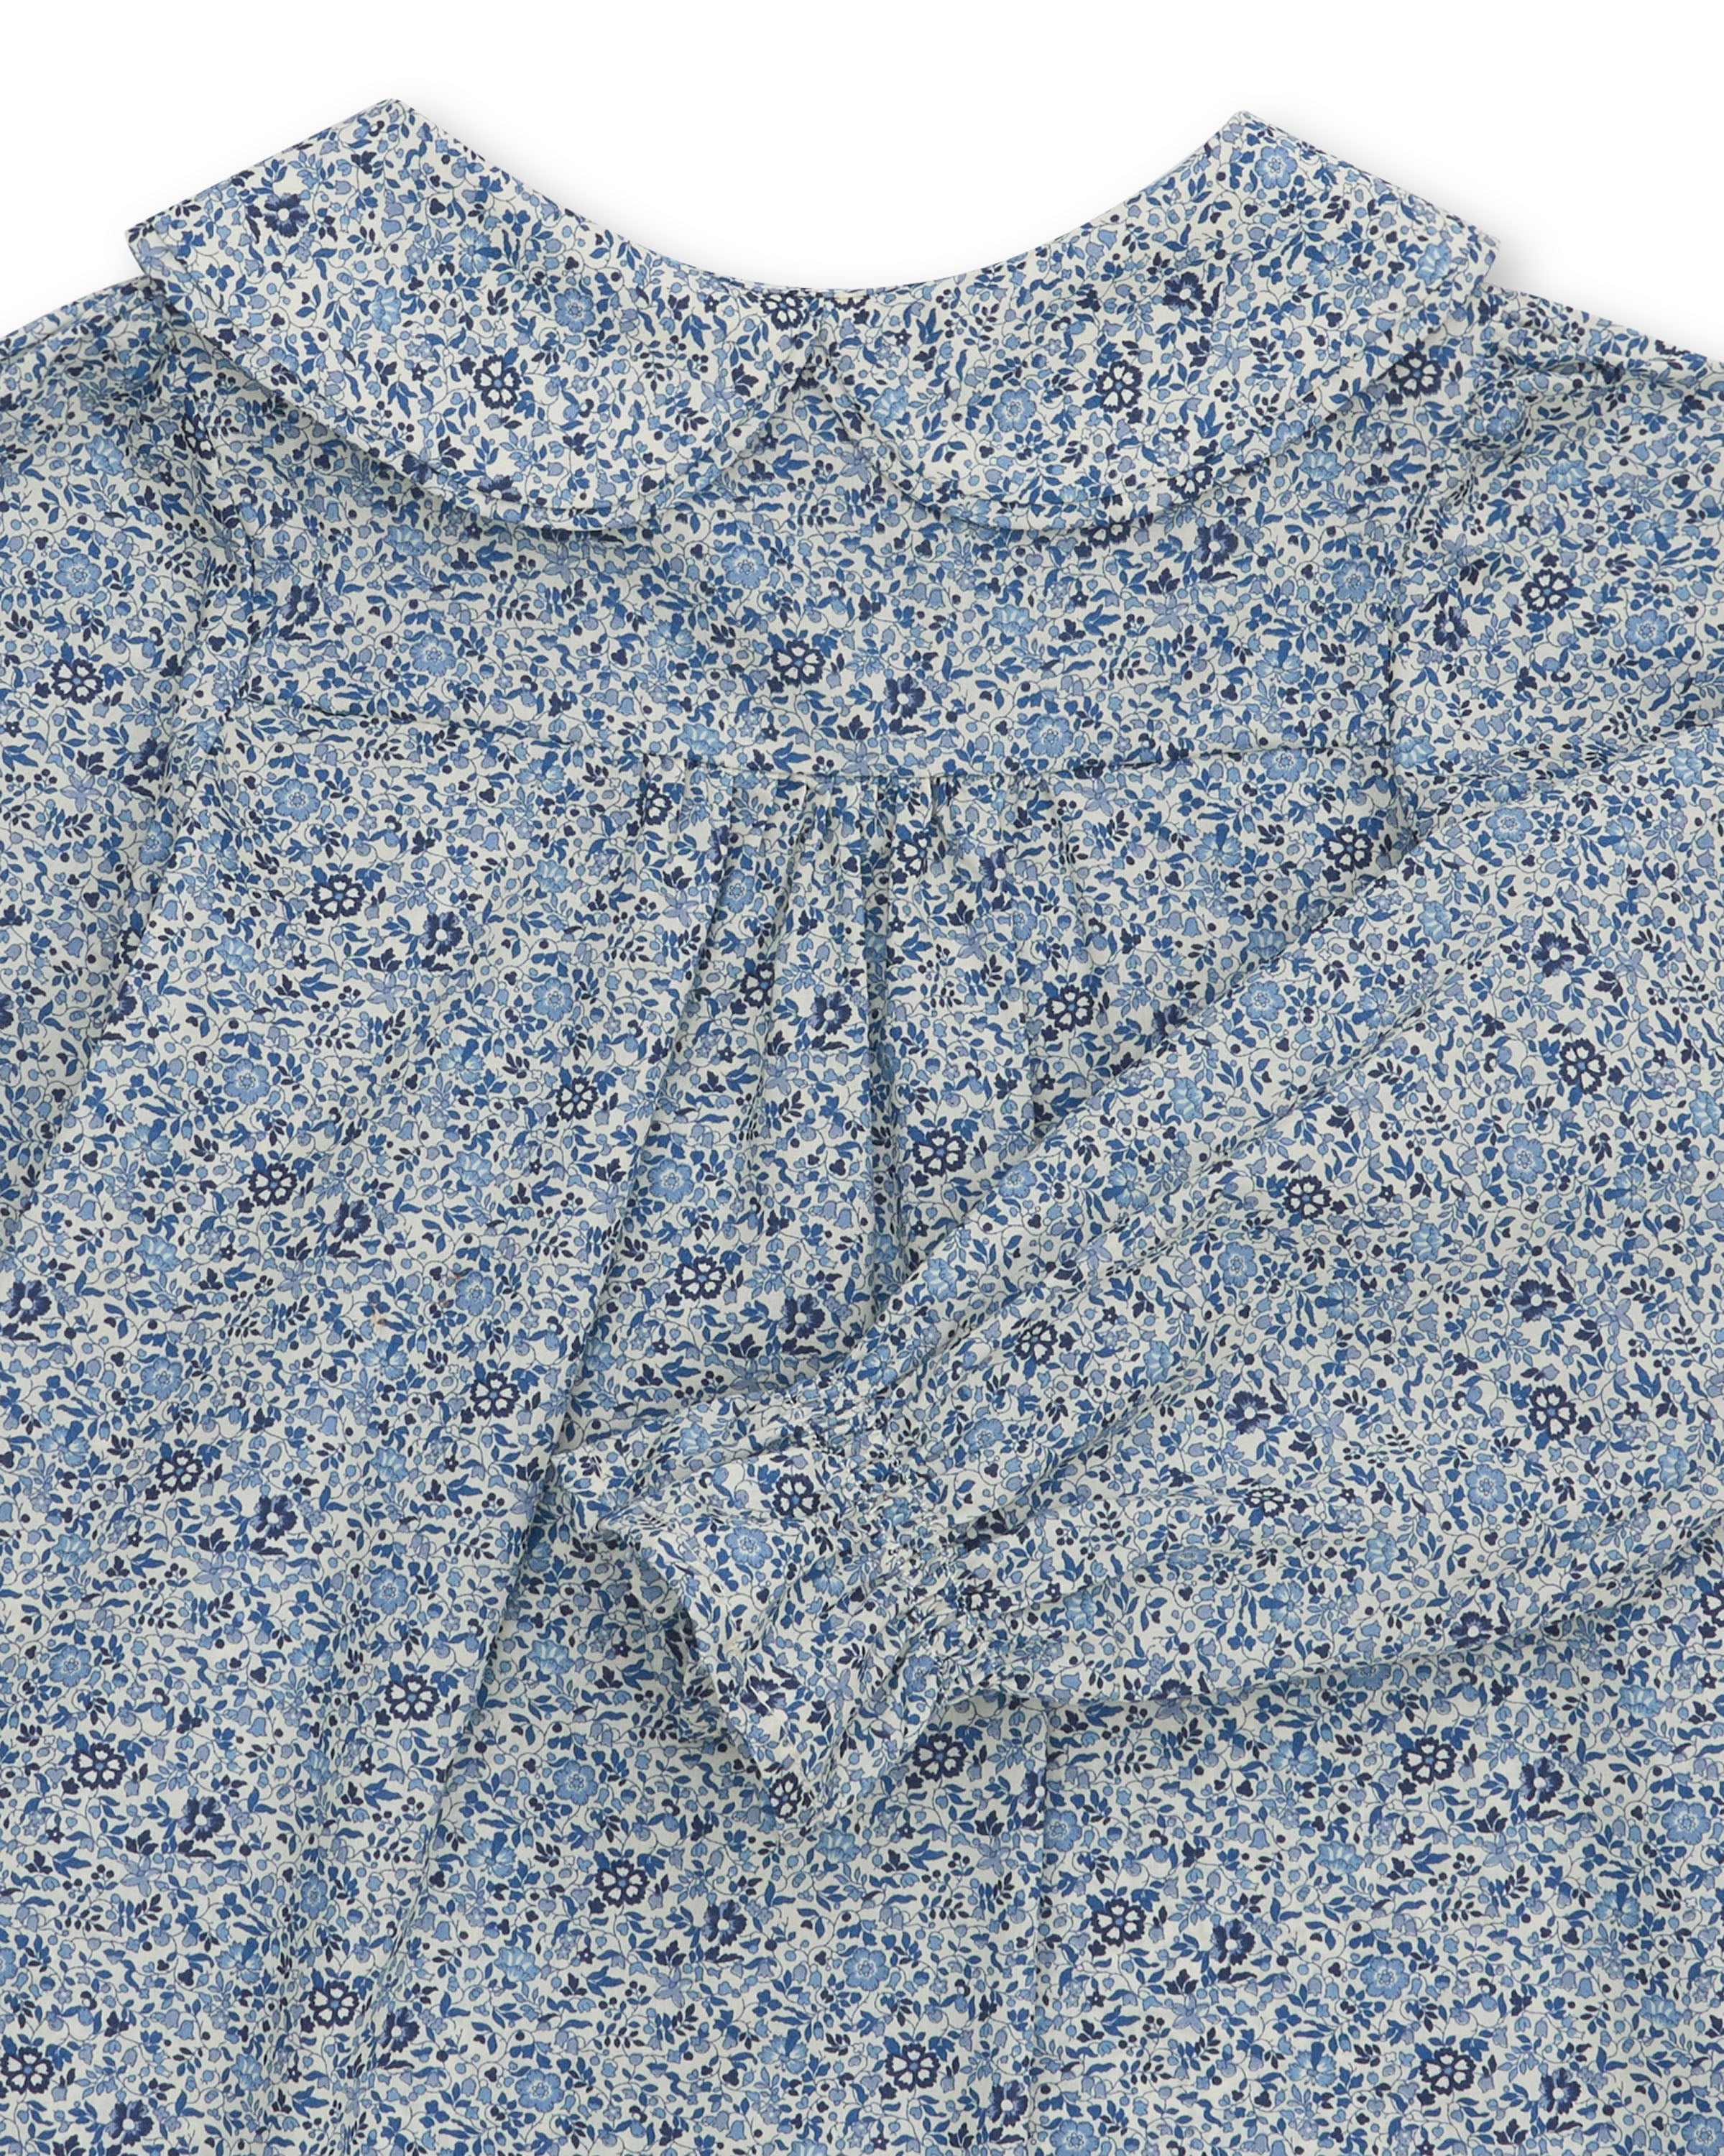 Girls' Designer Shirt, Blue Floral, ages 1 to 6.